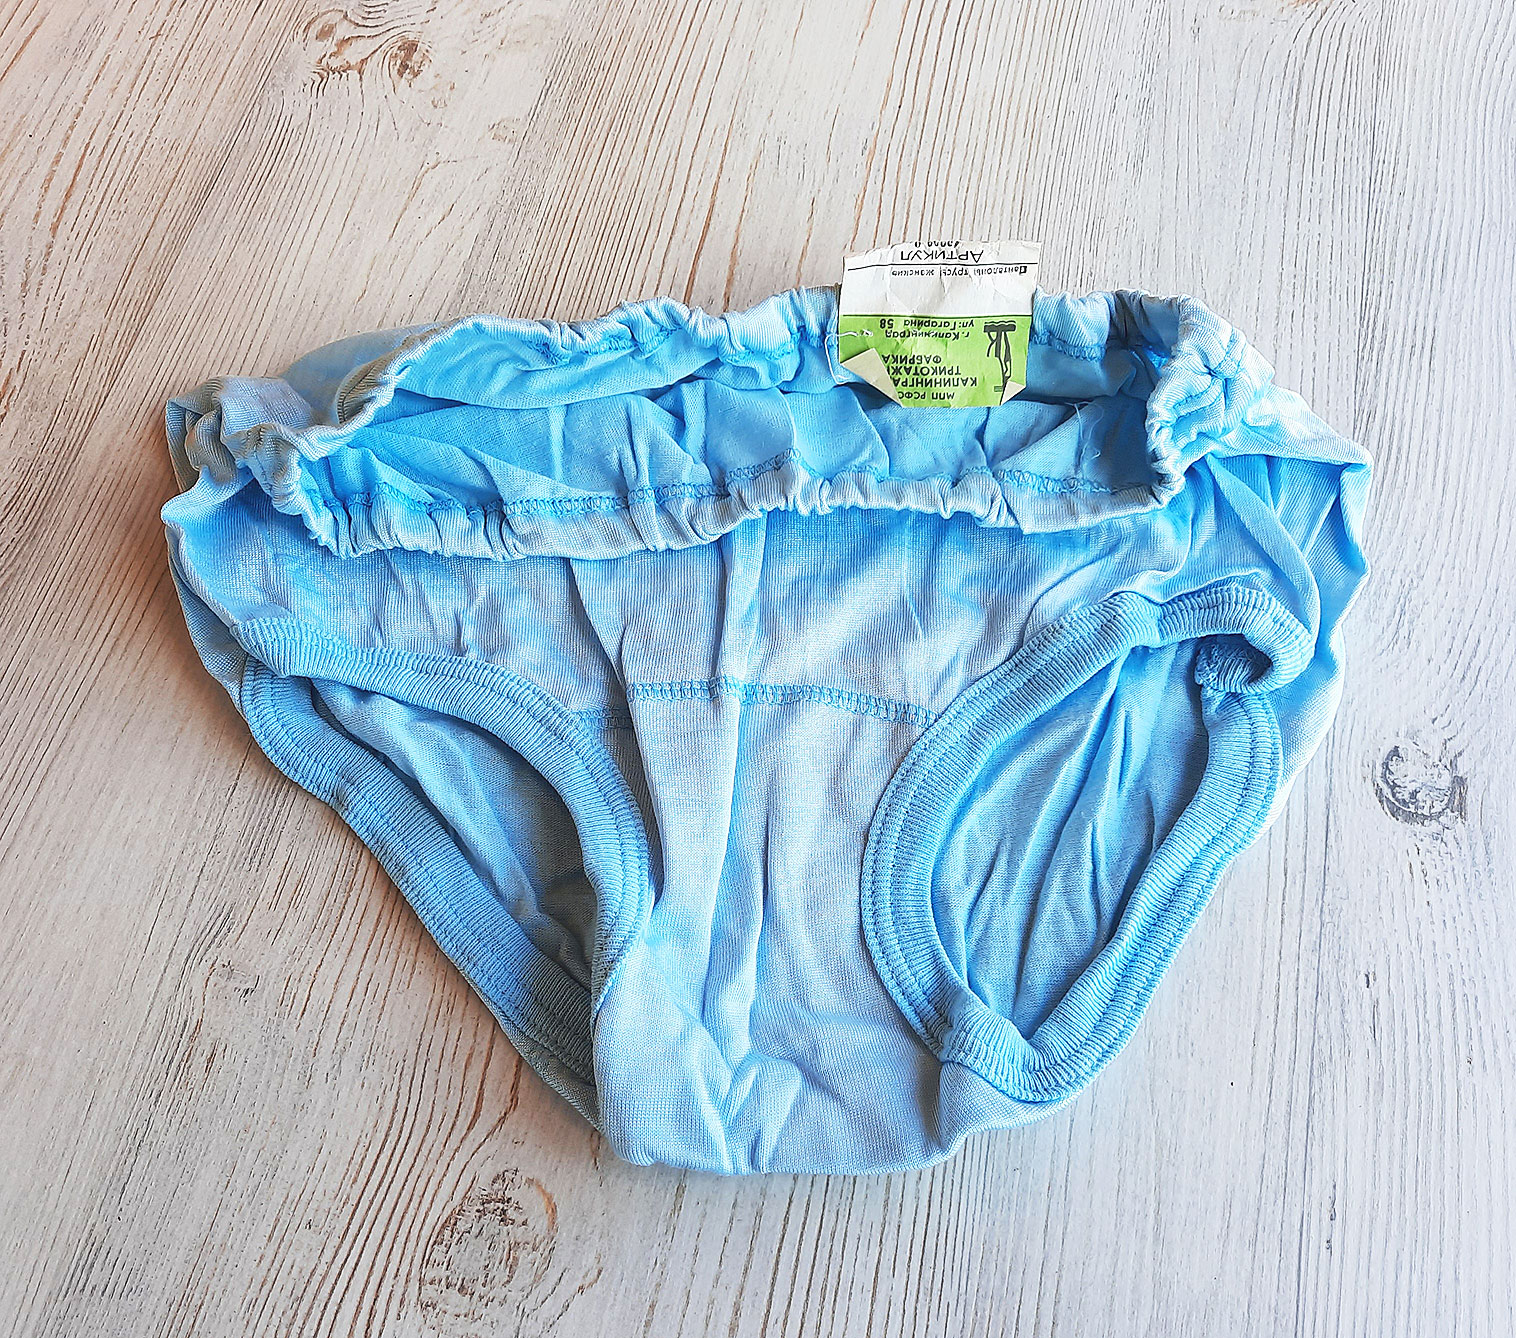 Russian womens blue panties vintage - Soviet ladies underpants